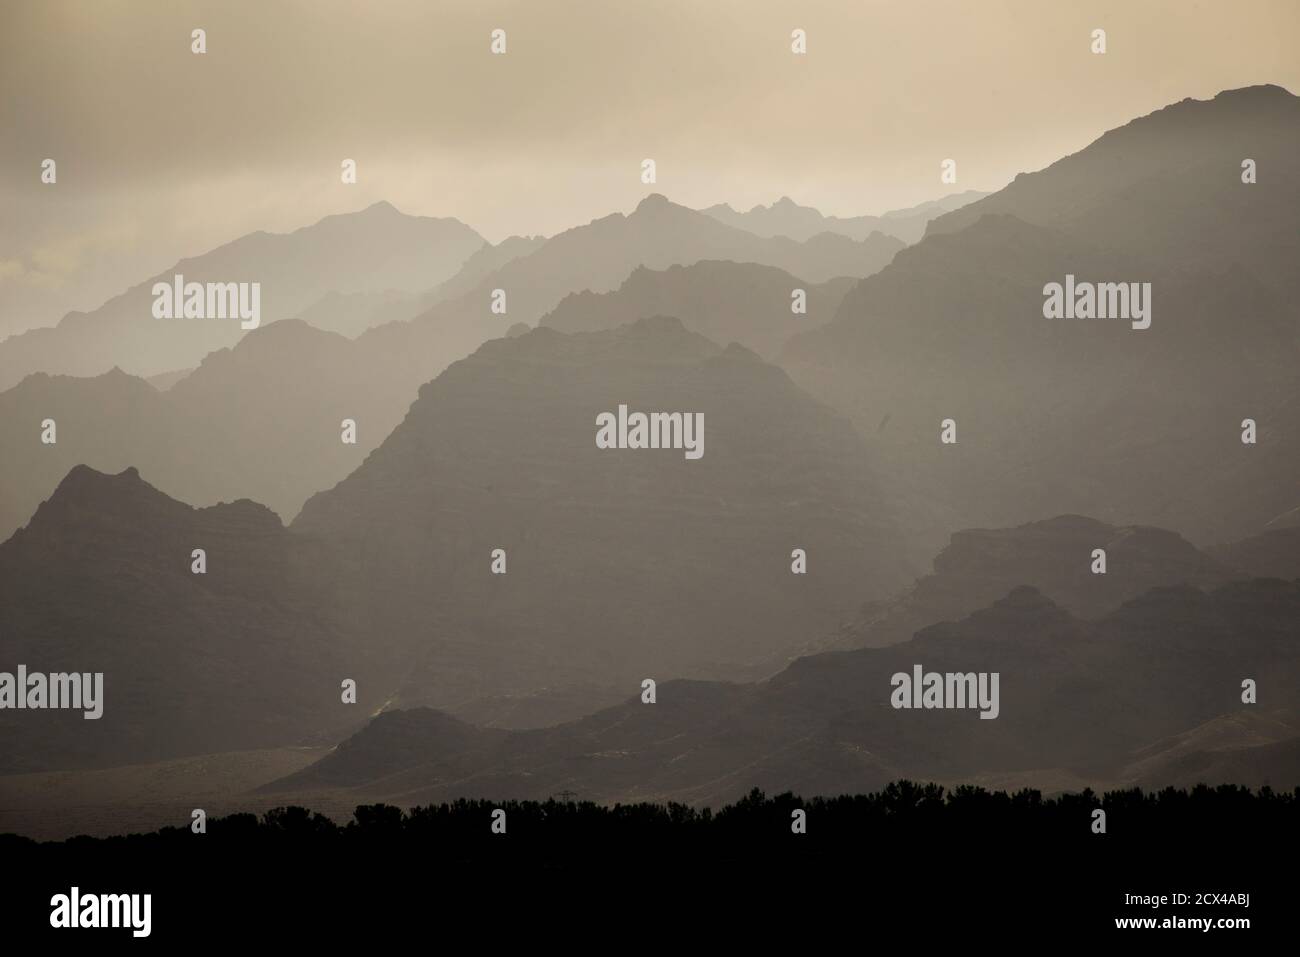 7215 Banque de photographies et d'images à haute résolution - Alamy